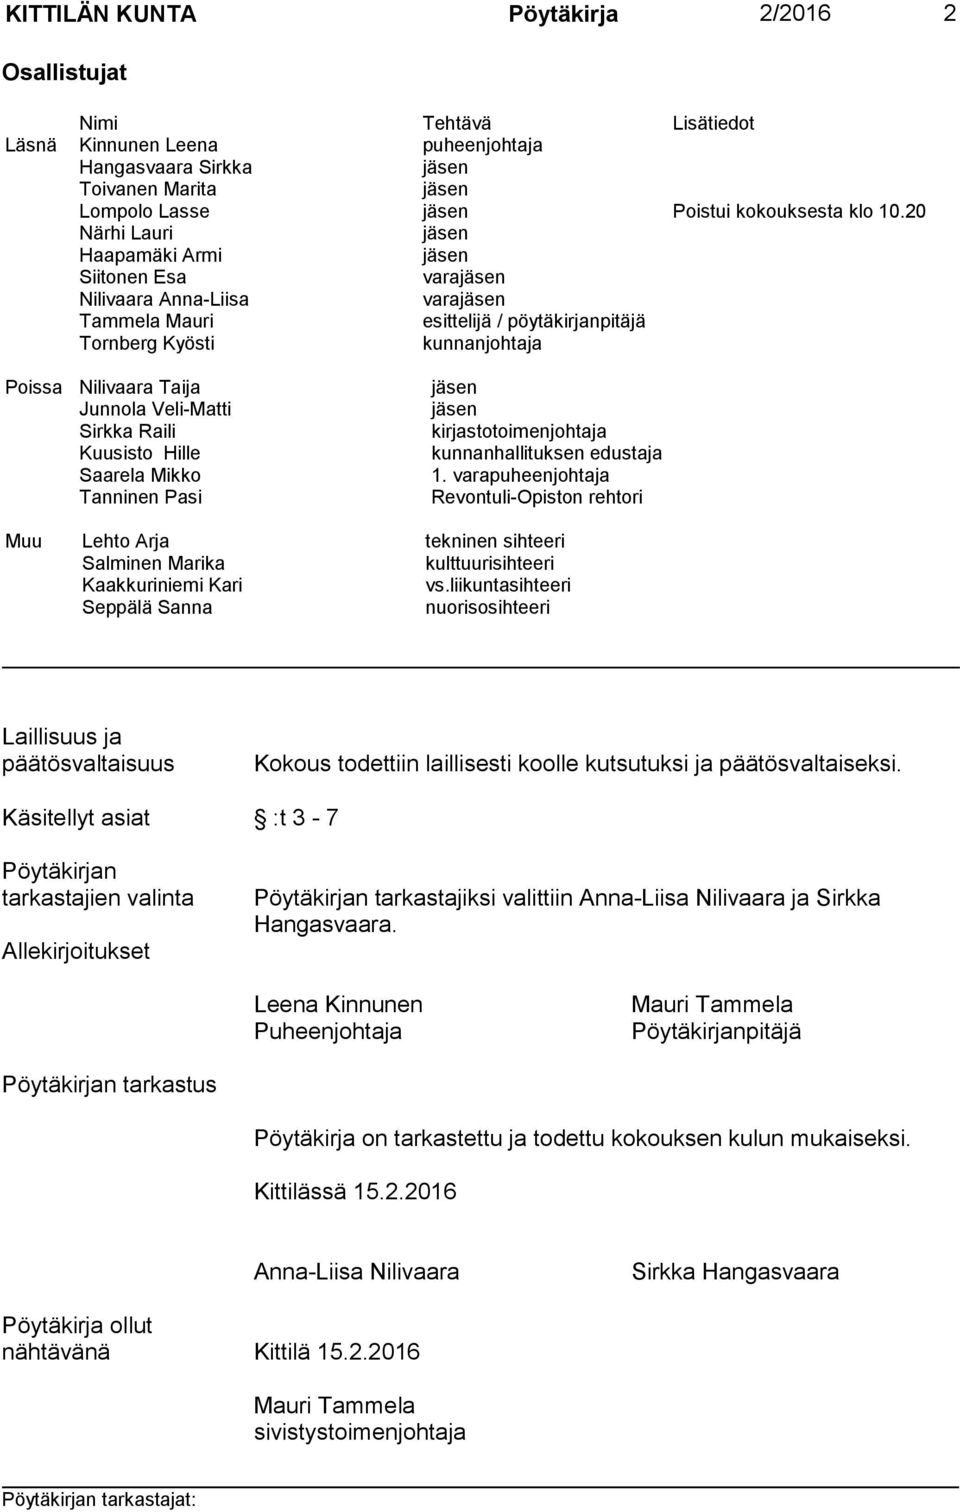 Raili kirjastotoimenjohtaja Kuusisto Hille kunnanhallituksen edustaja Saarela Mikko 1.